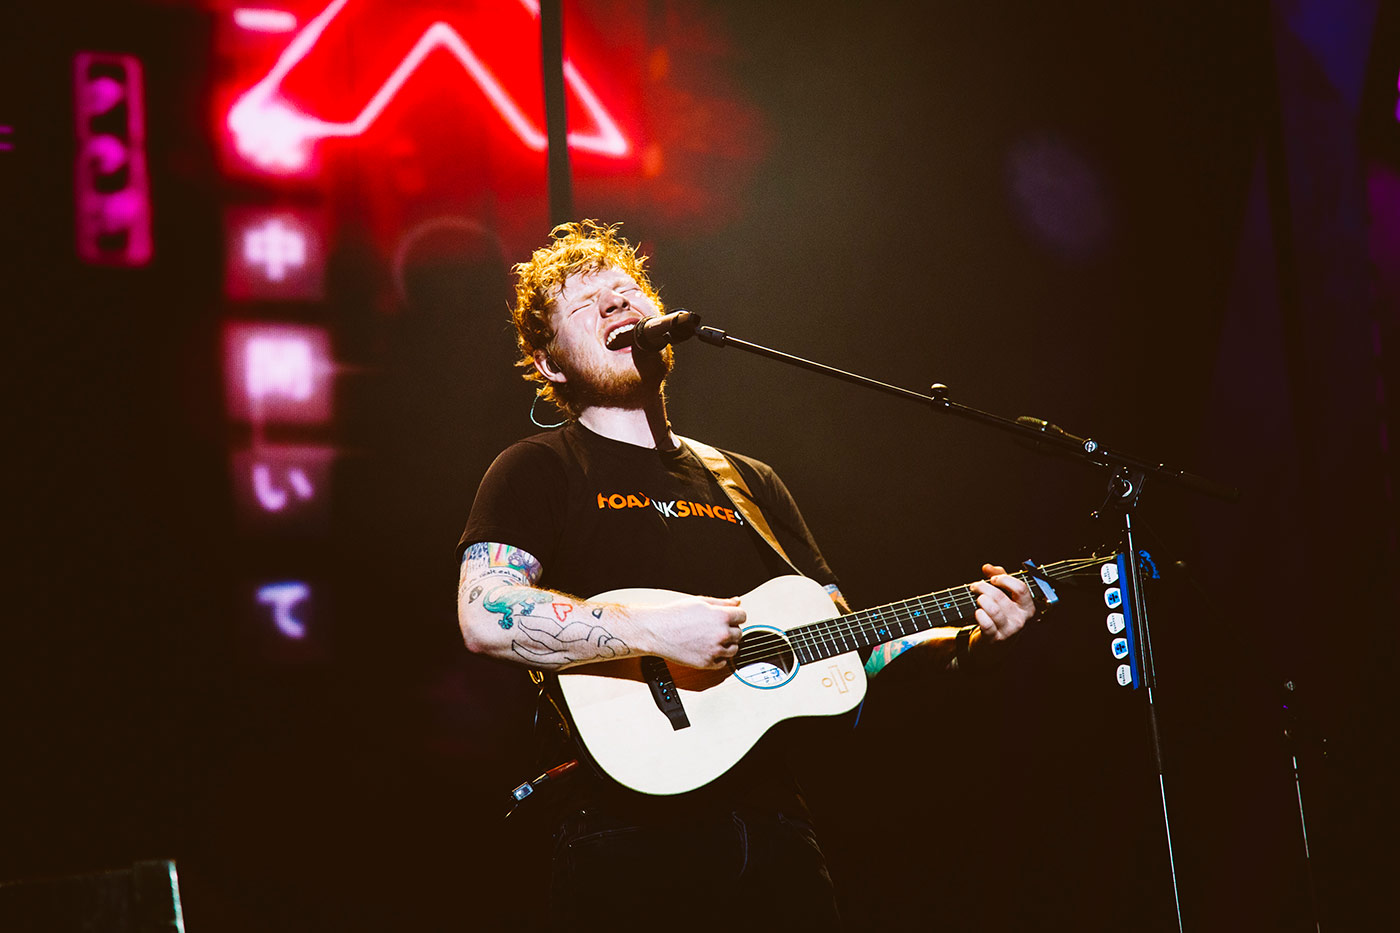 Ed Sheeran relanza su "Bad Habits" junto a Bring Me The Horizon